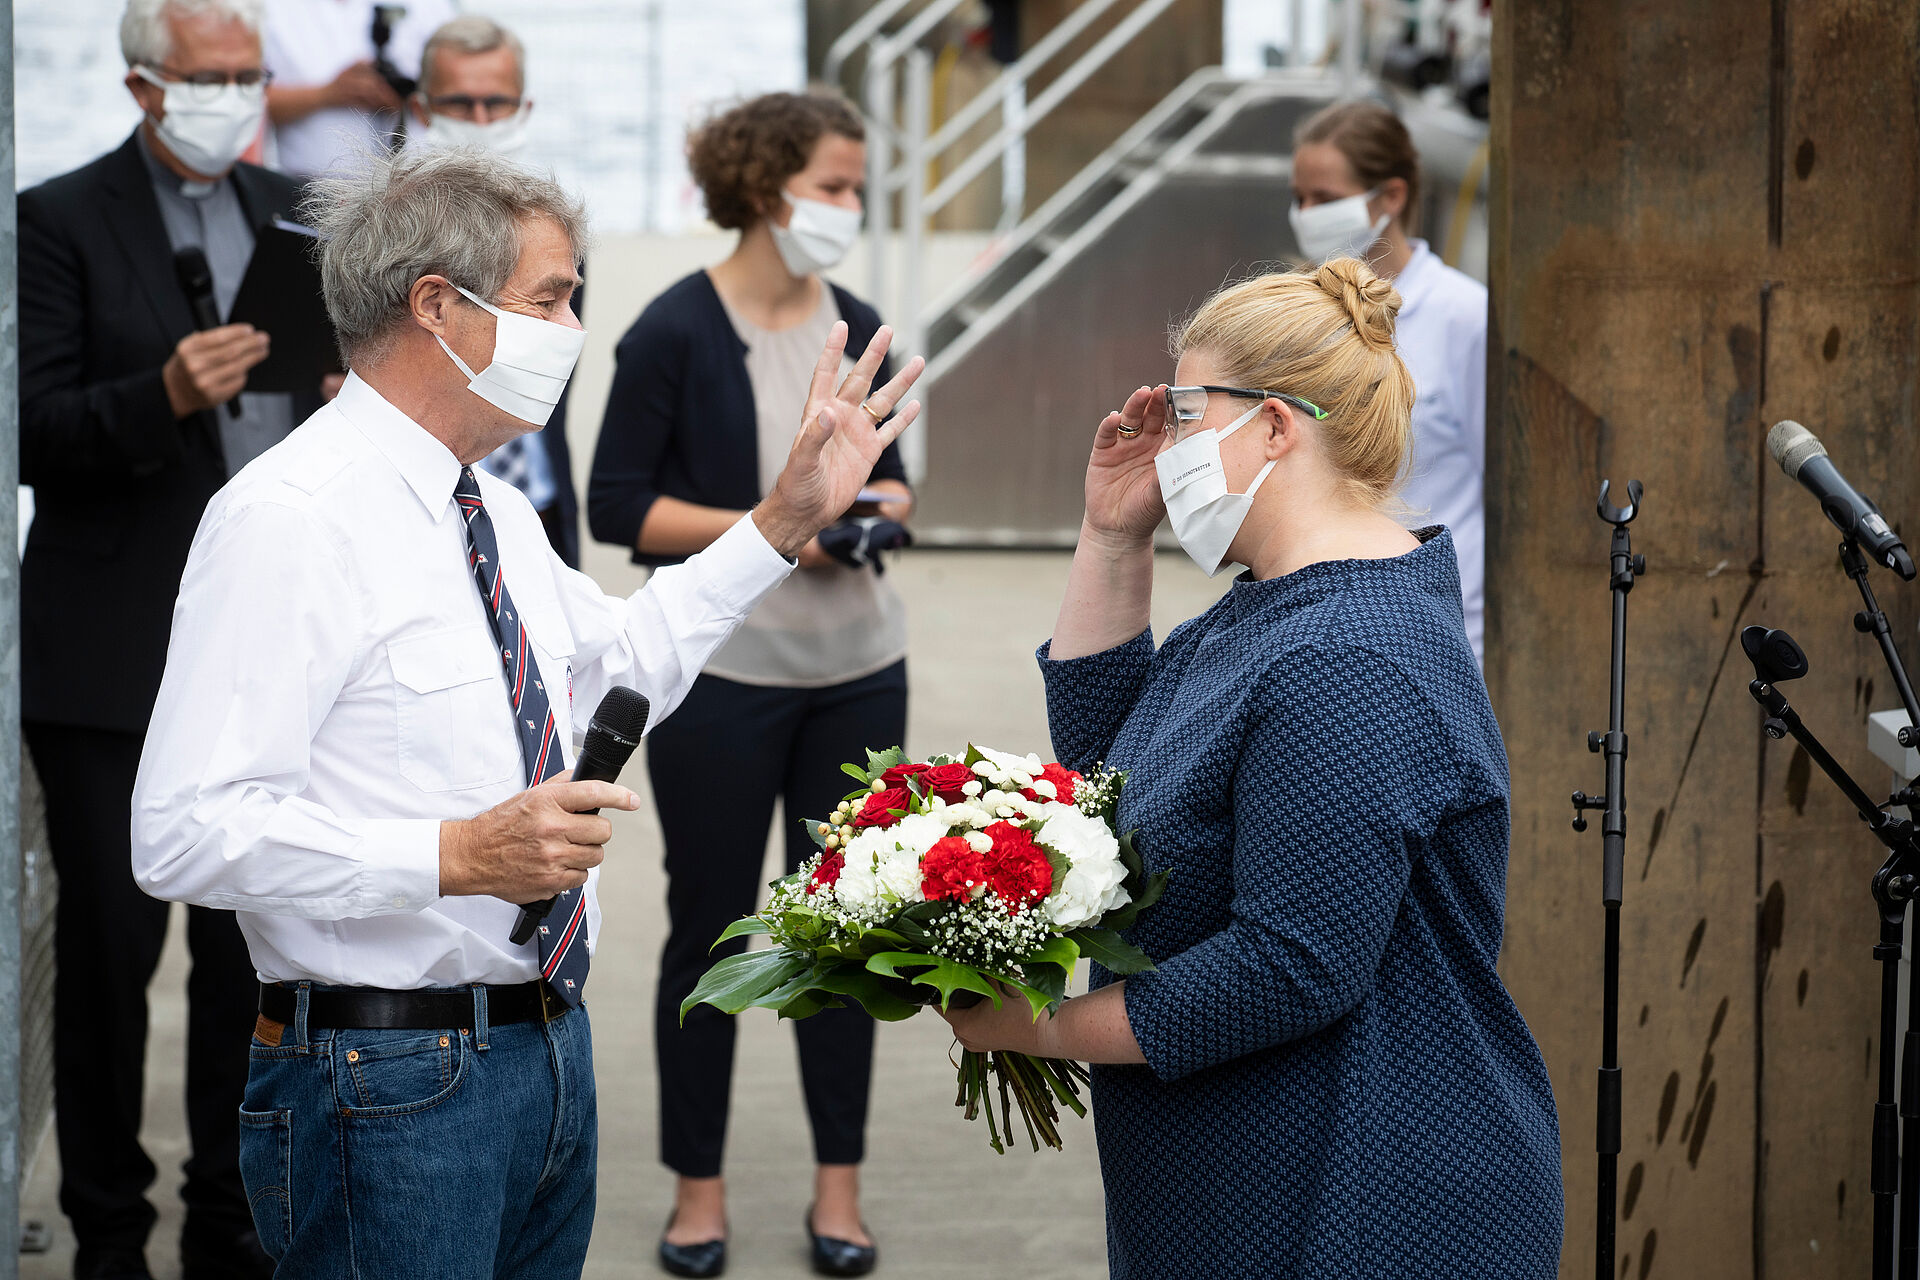 Mann steht mit Mikrofon neben Frau mit Blumenstrauß in der Hand